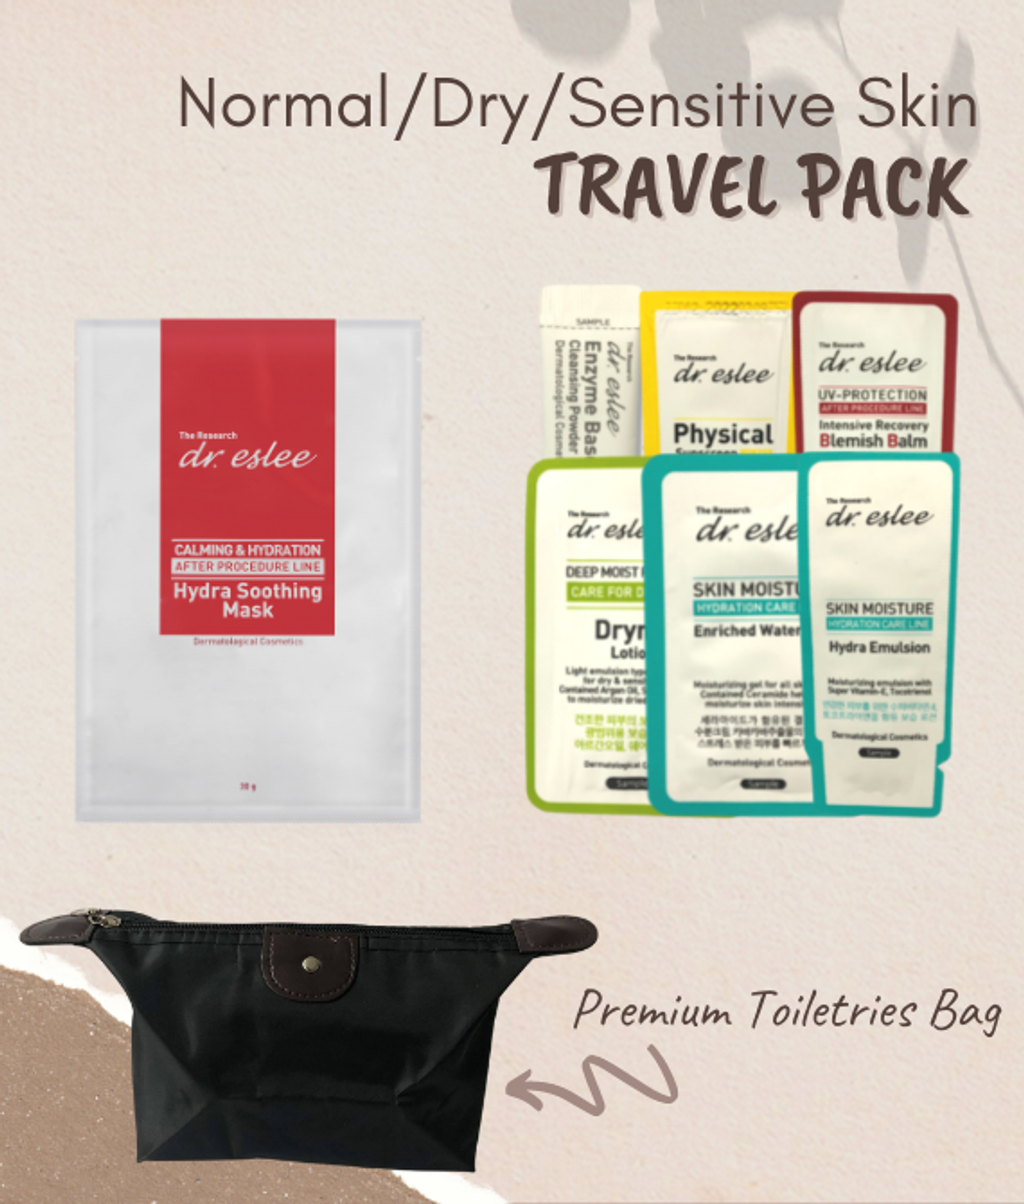 dreslee-travel--trial-pack--normal--dry--sensitive-skin-discount-64_20210803023858